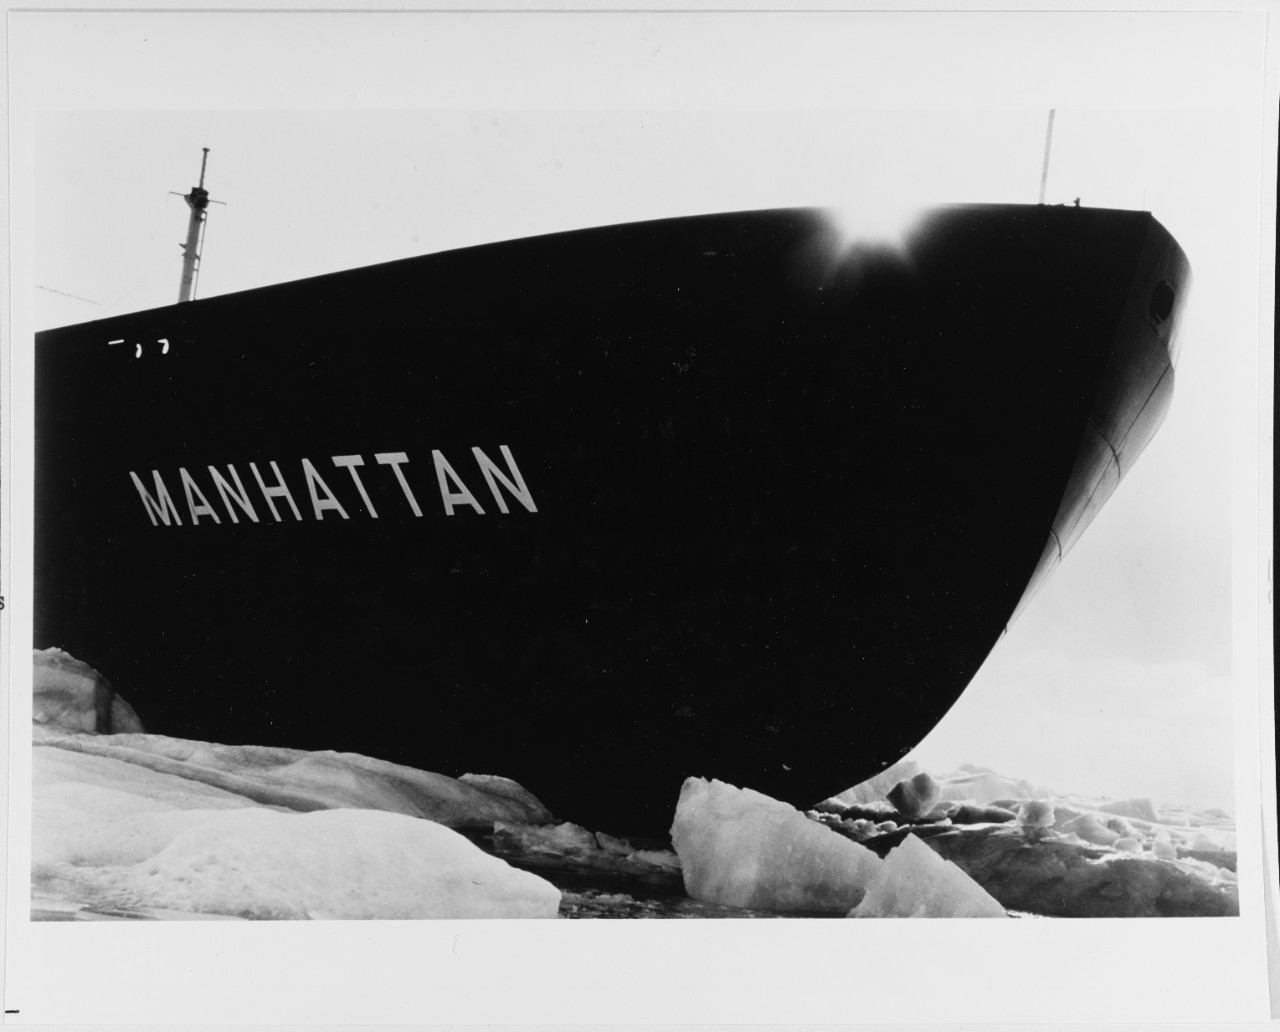 SS MANHATTAN